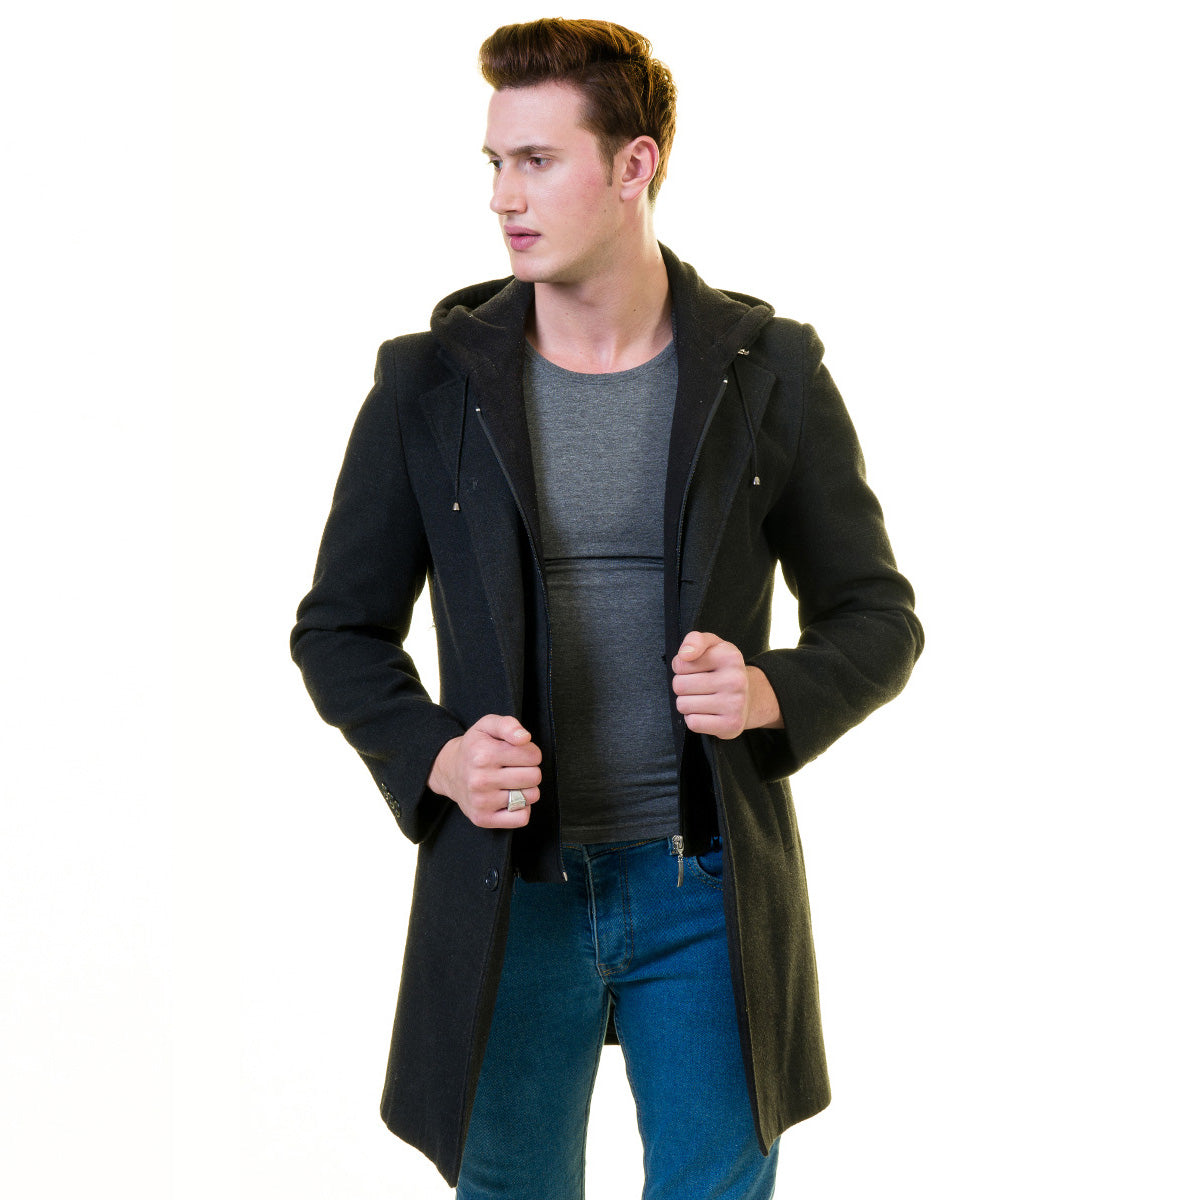 Men's Hoods for Coats & Jackets